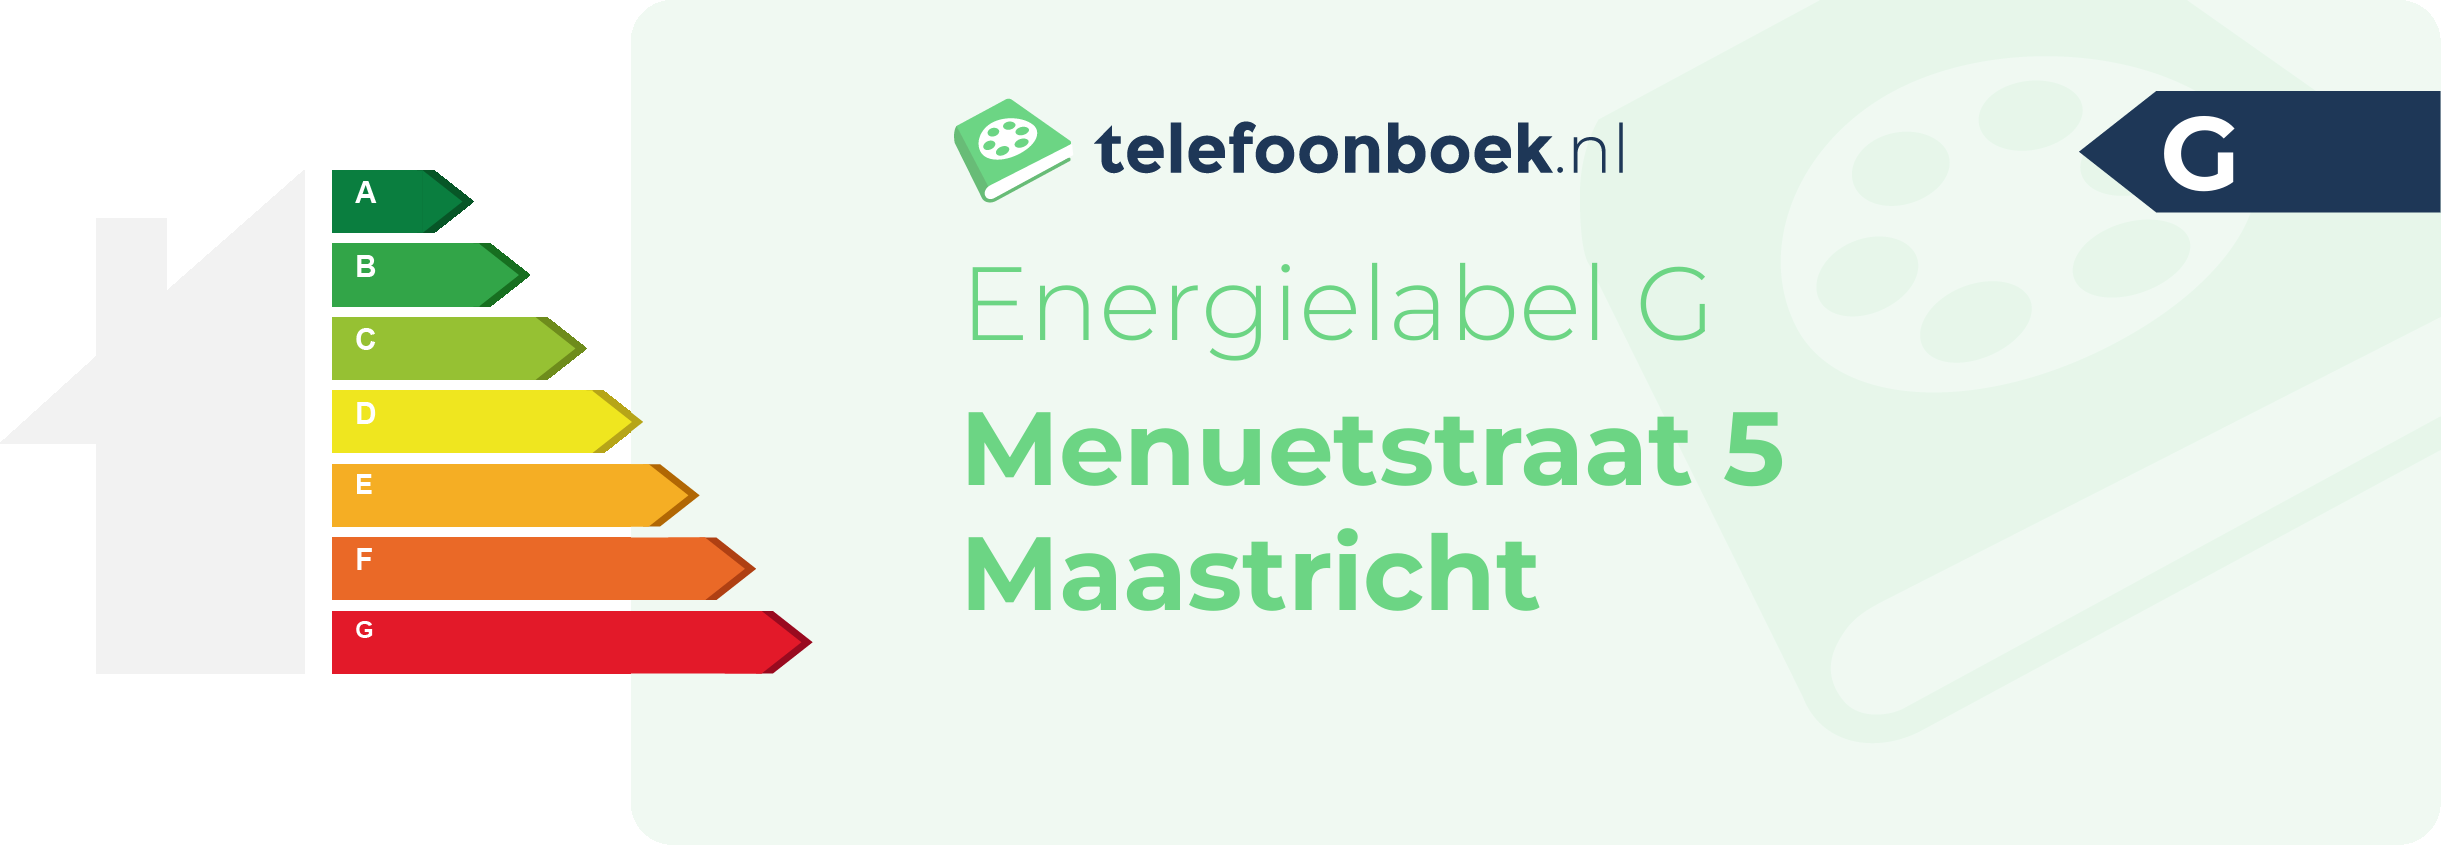 Energielabel Menuetstraat 5 Maastricht